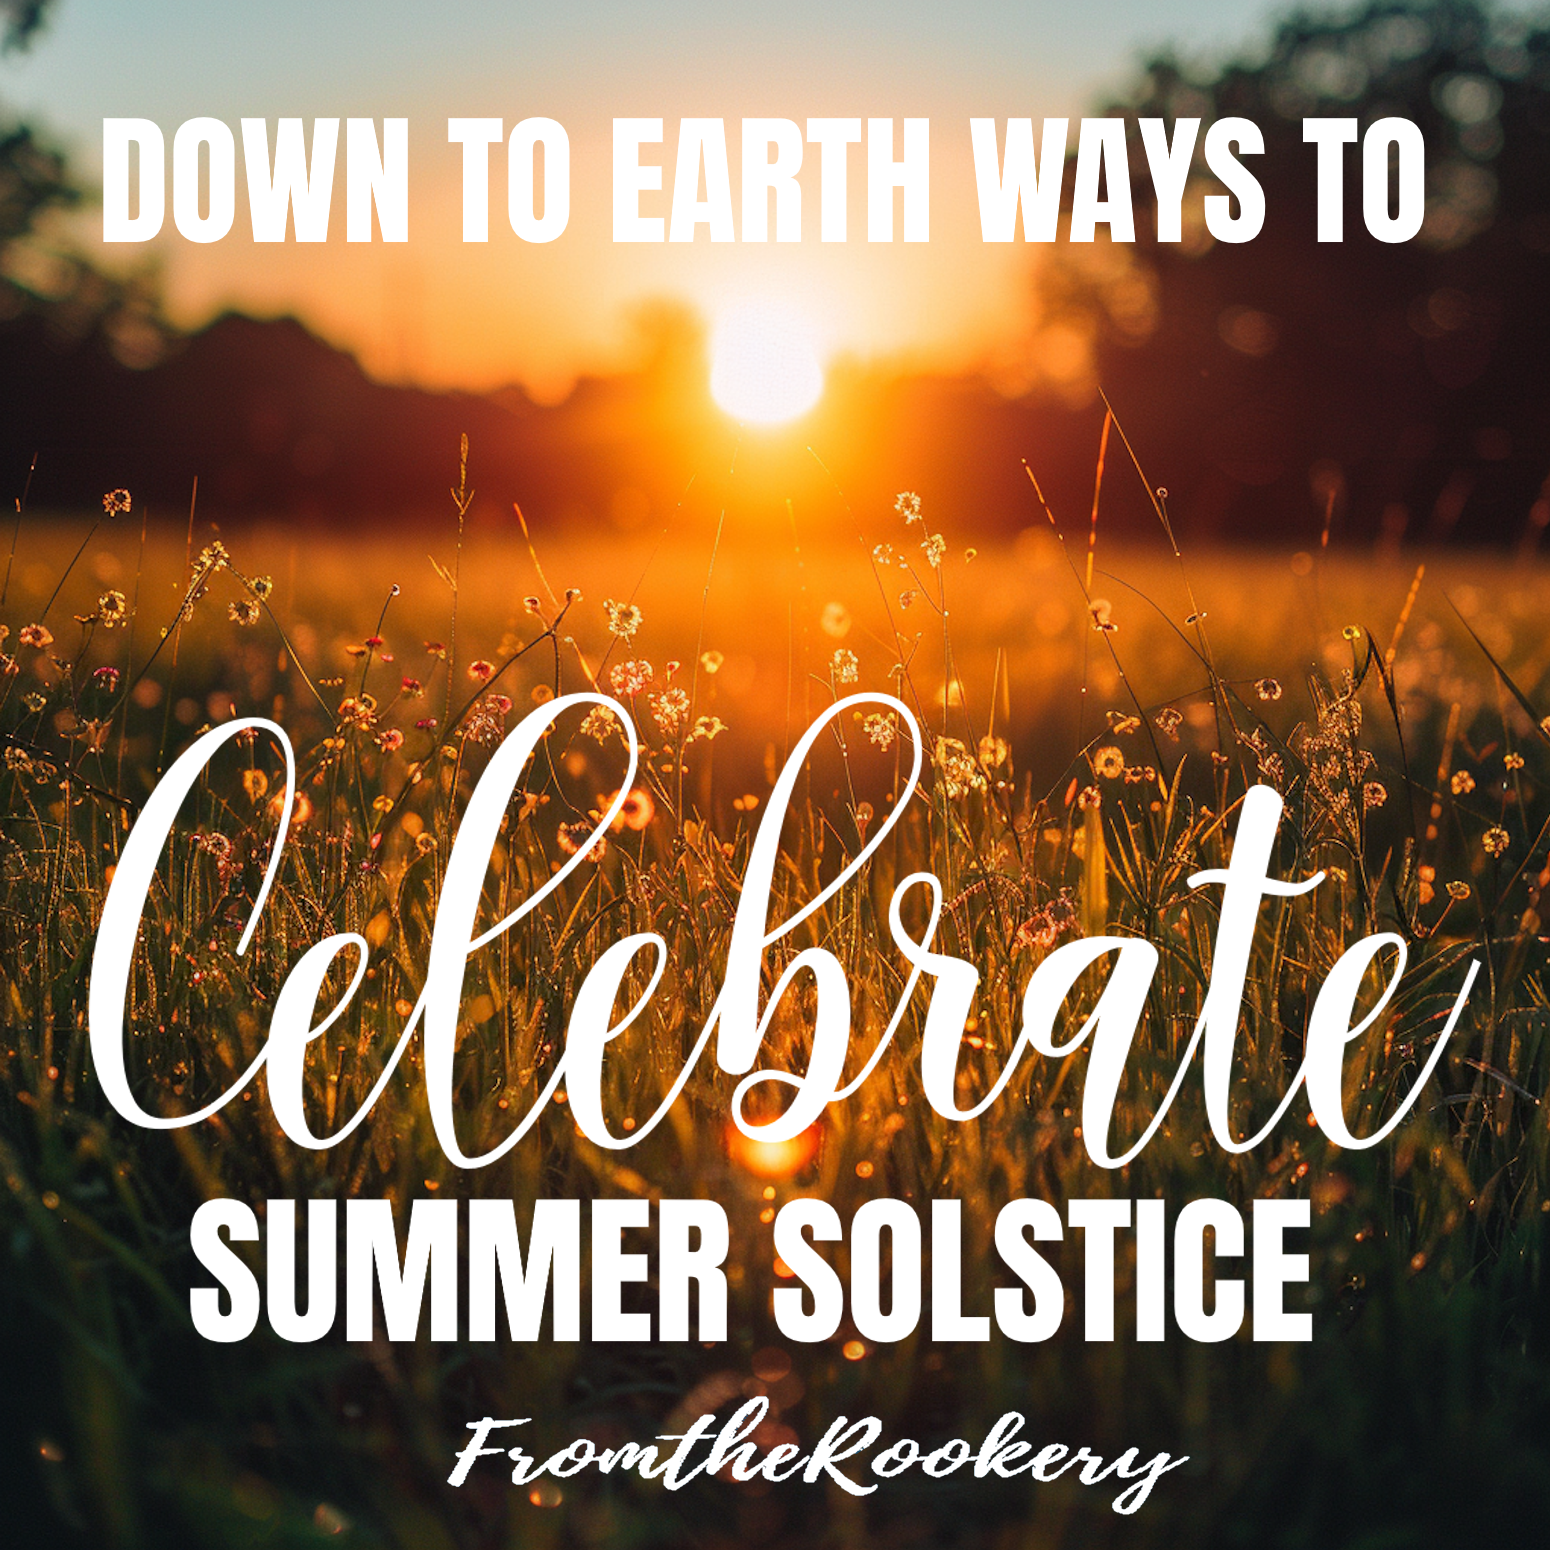 celebrate summer solstace